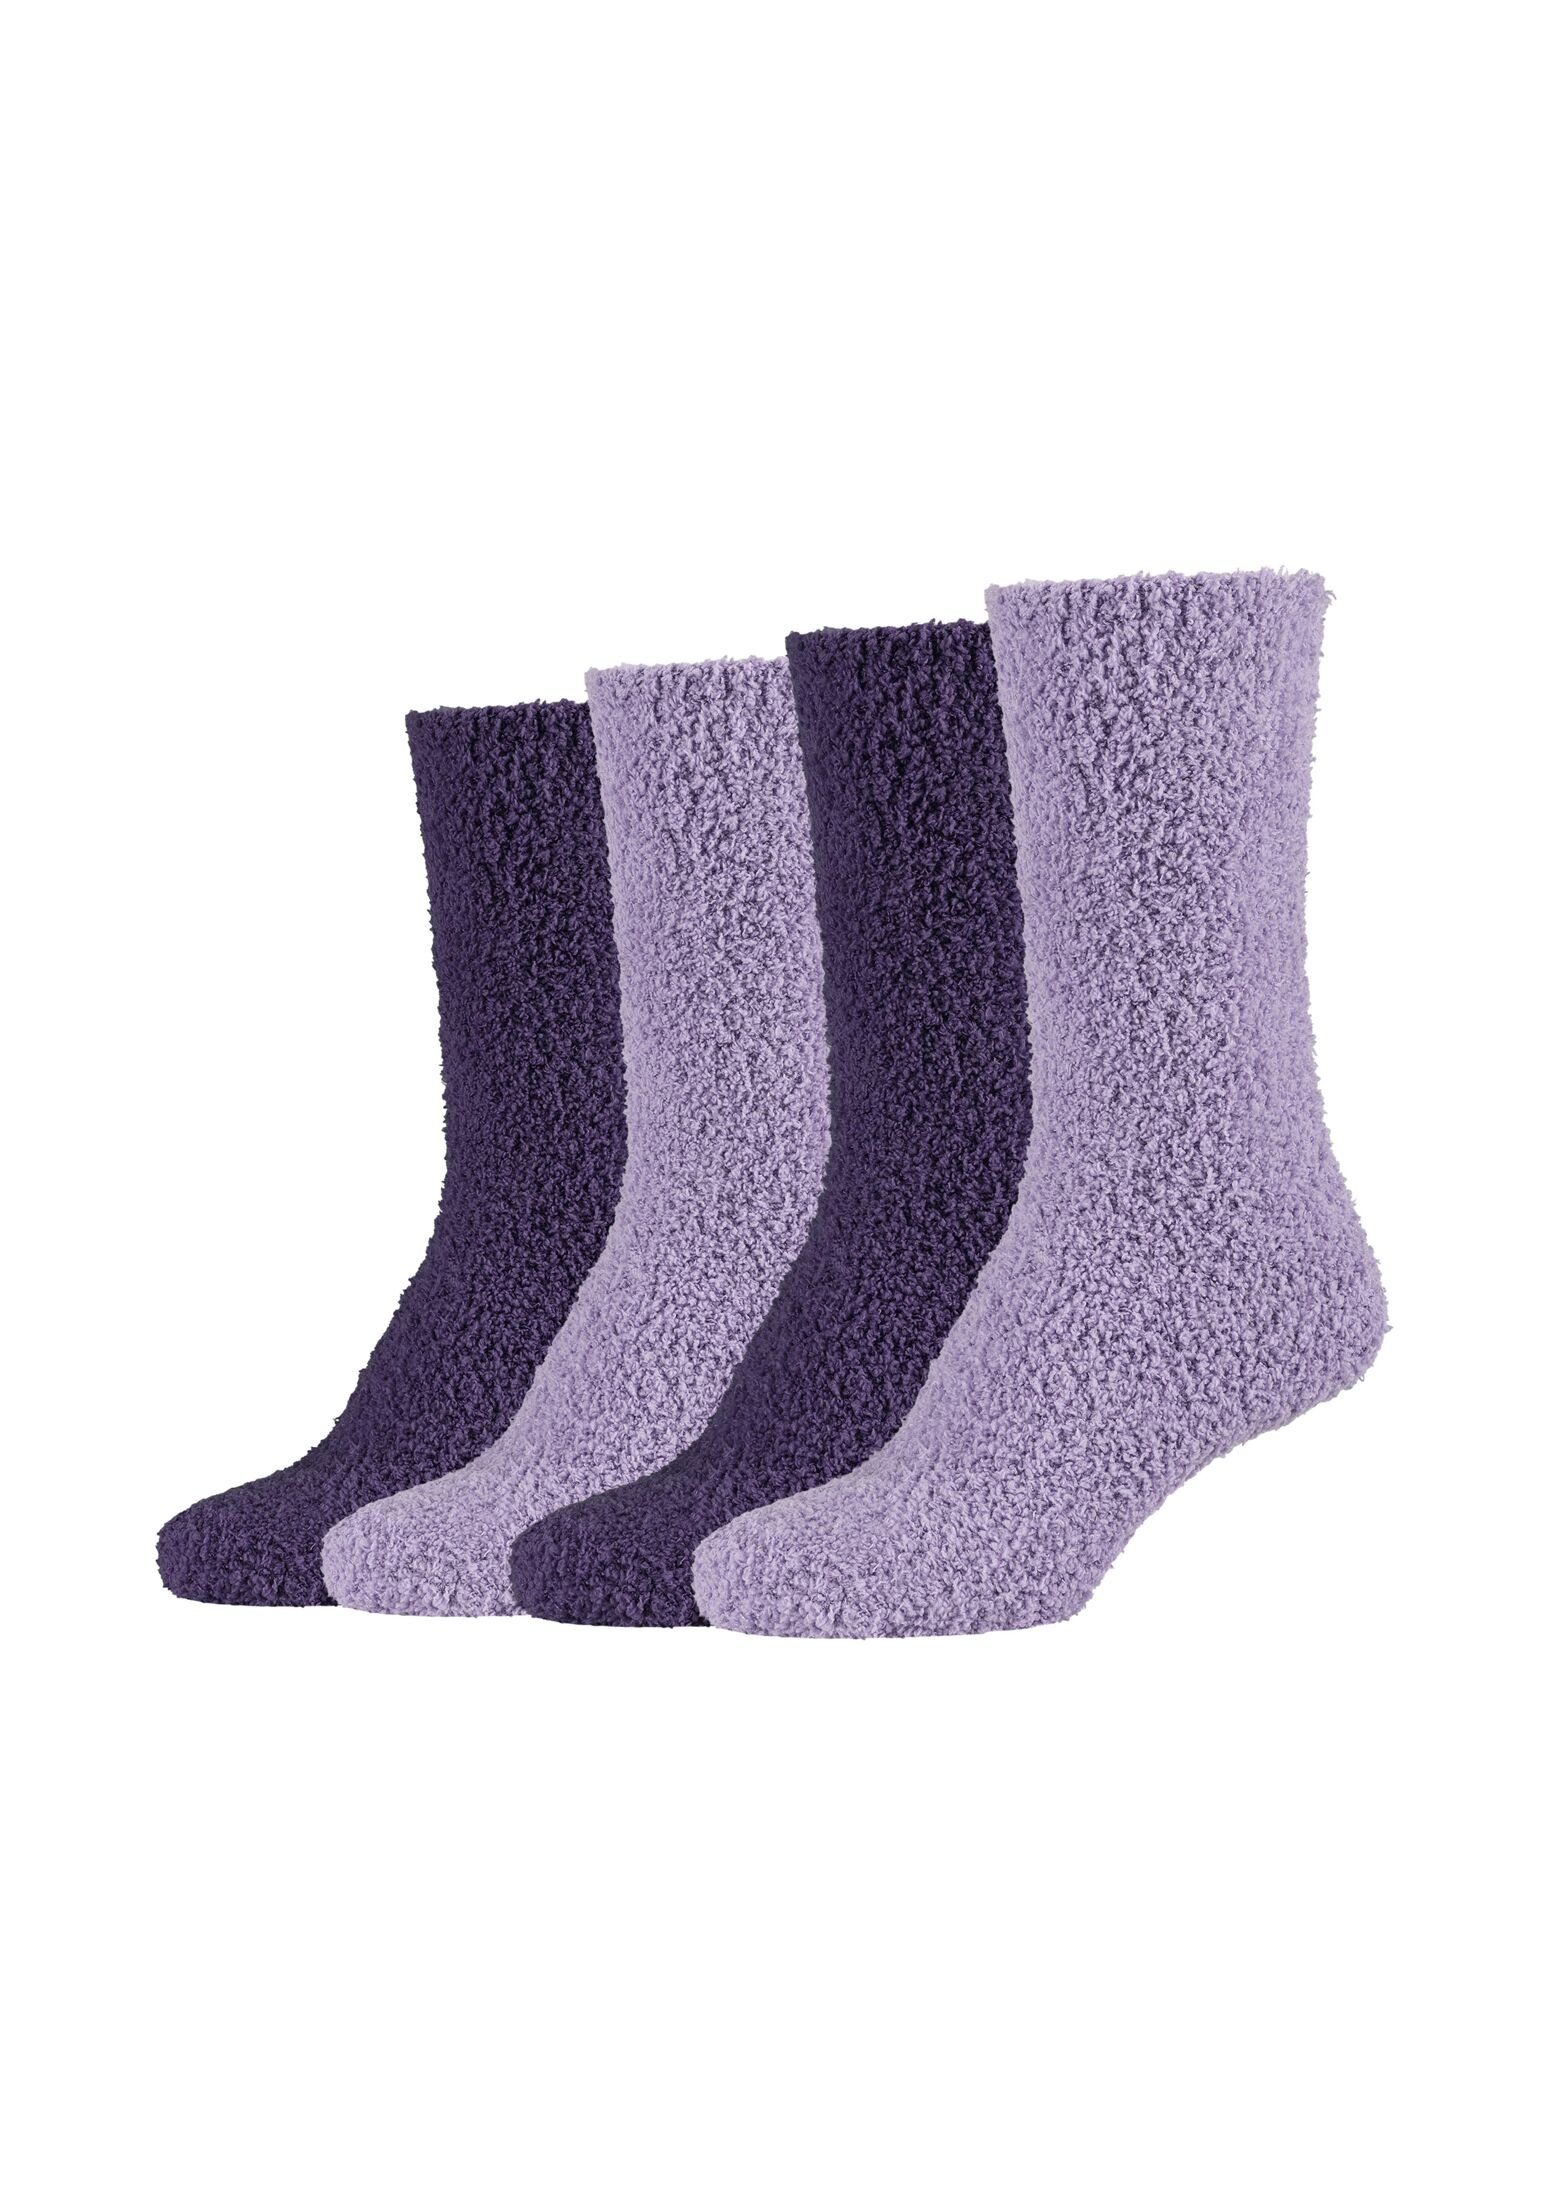 Camano Socken Socken Cosy Kuschelsocken Flauschig Warm Damen Lang mulberry purple